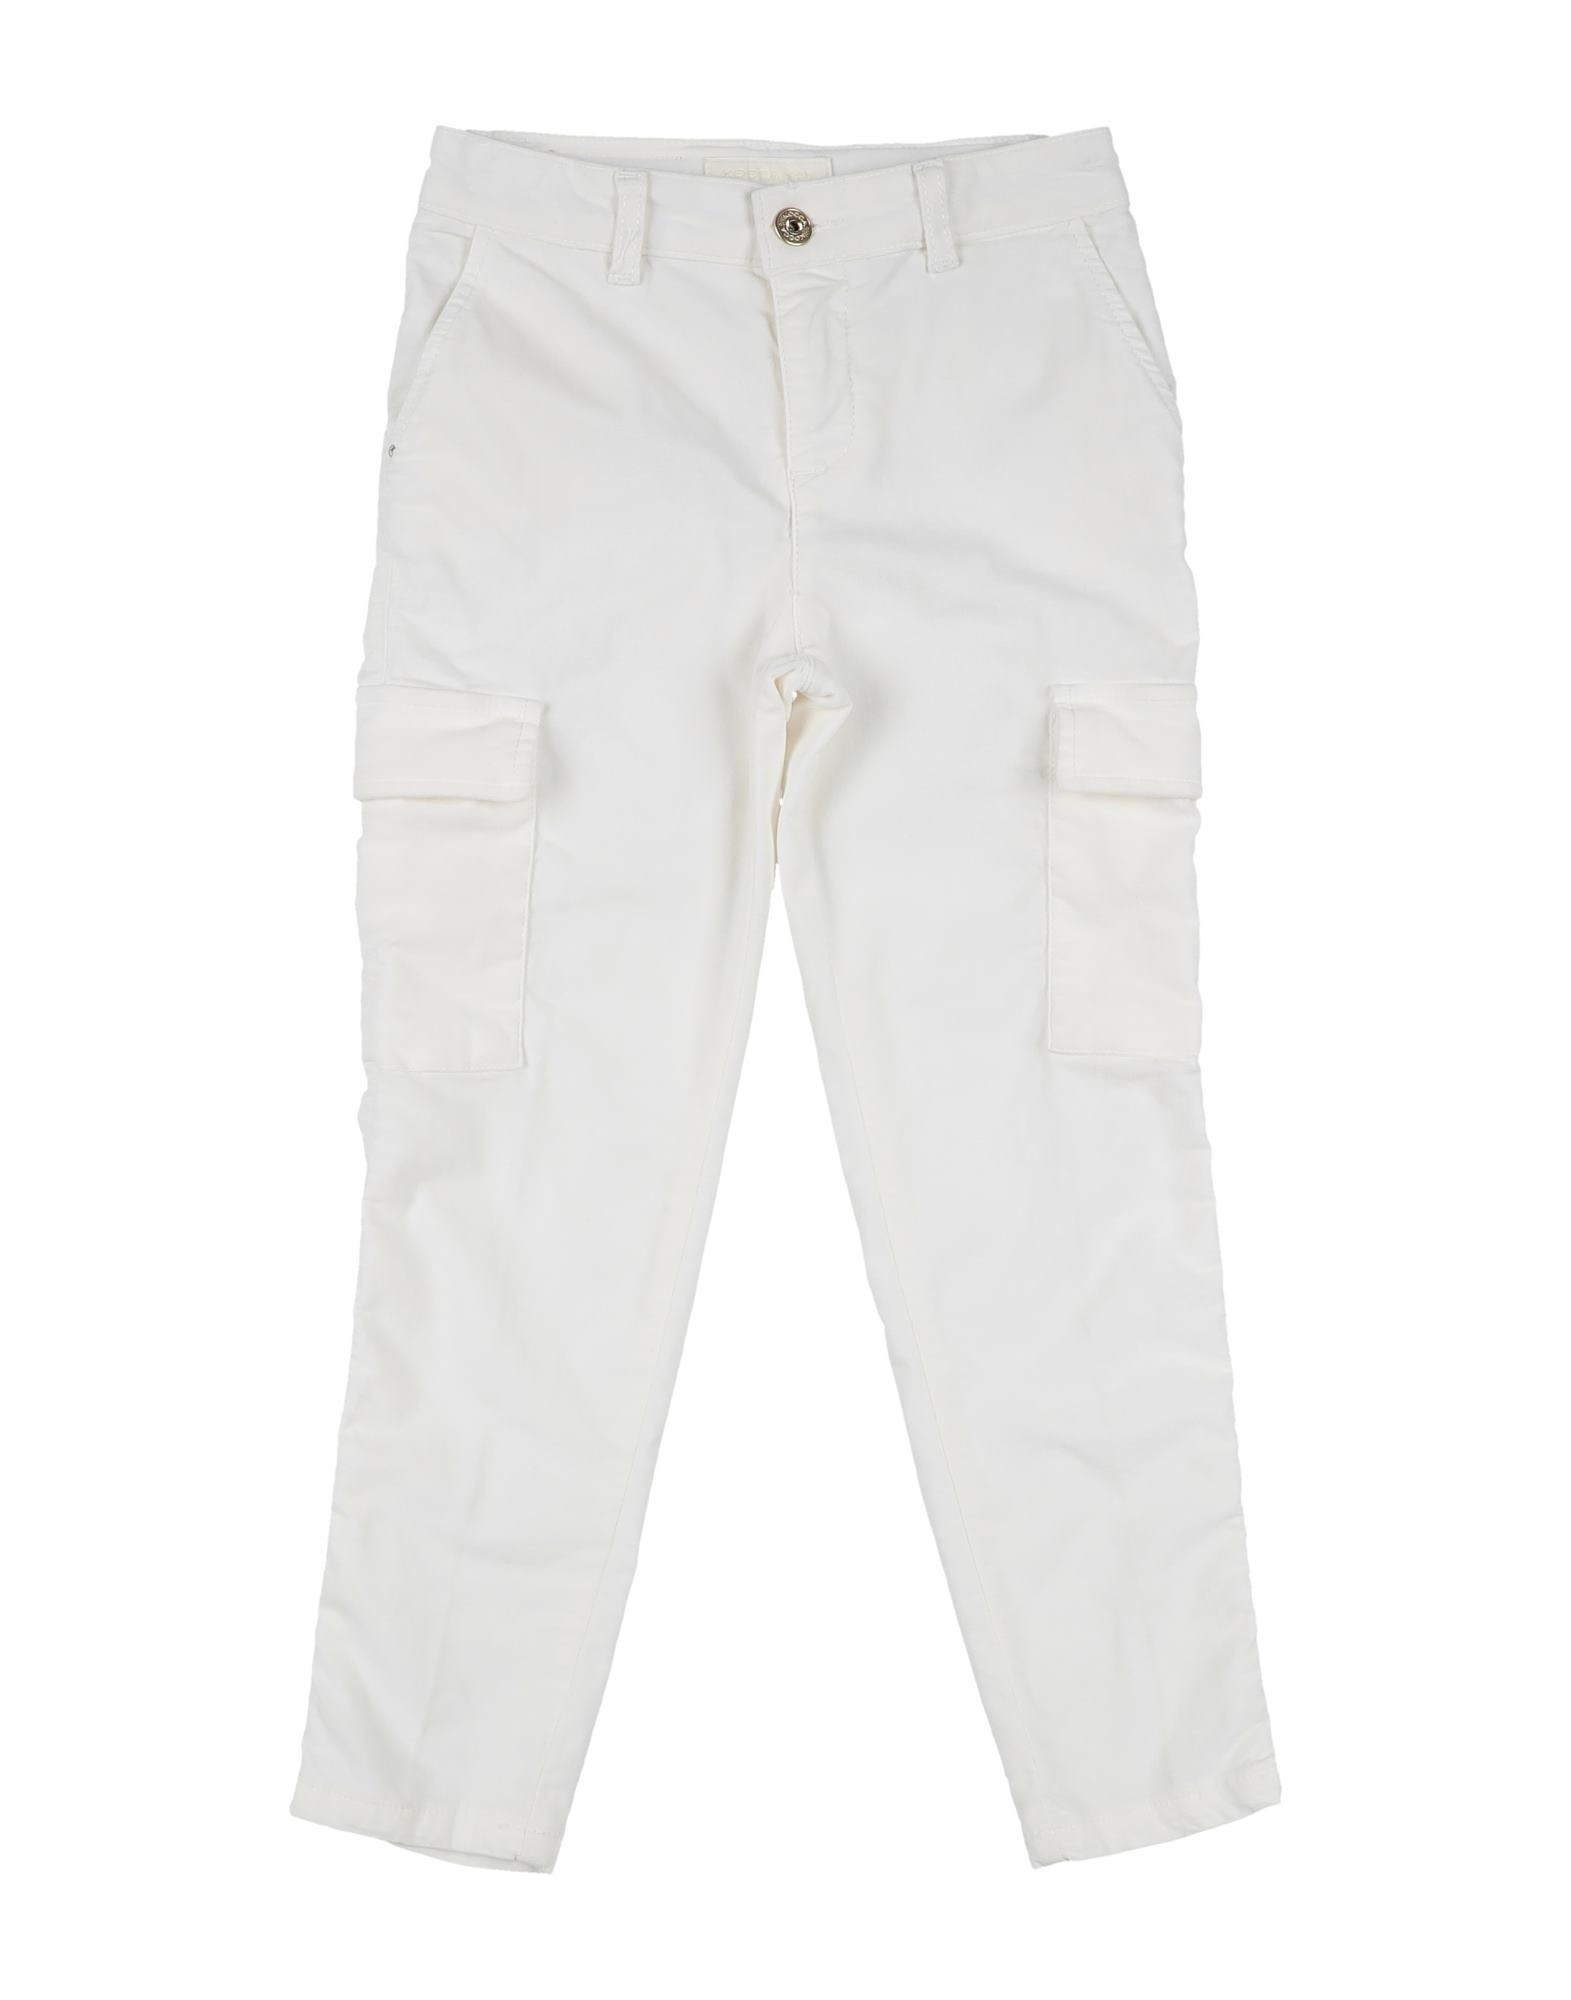 Kocca Kids' Pants In White